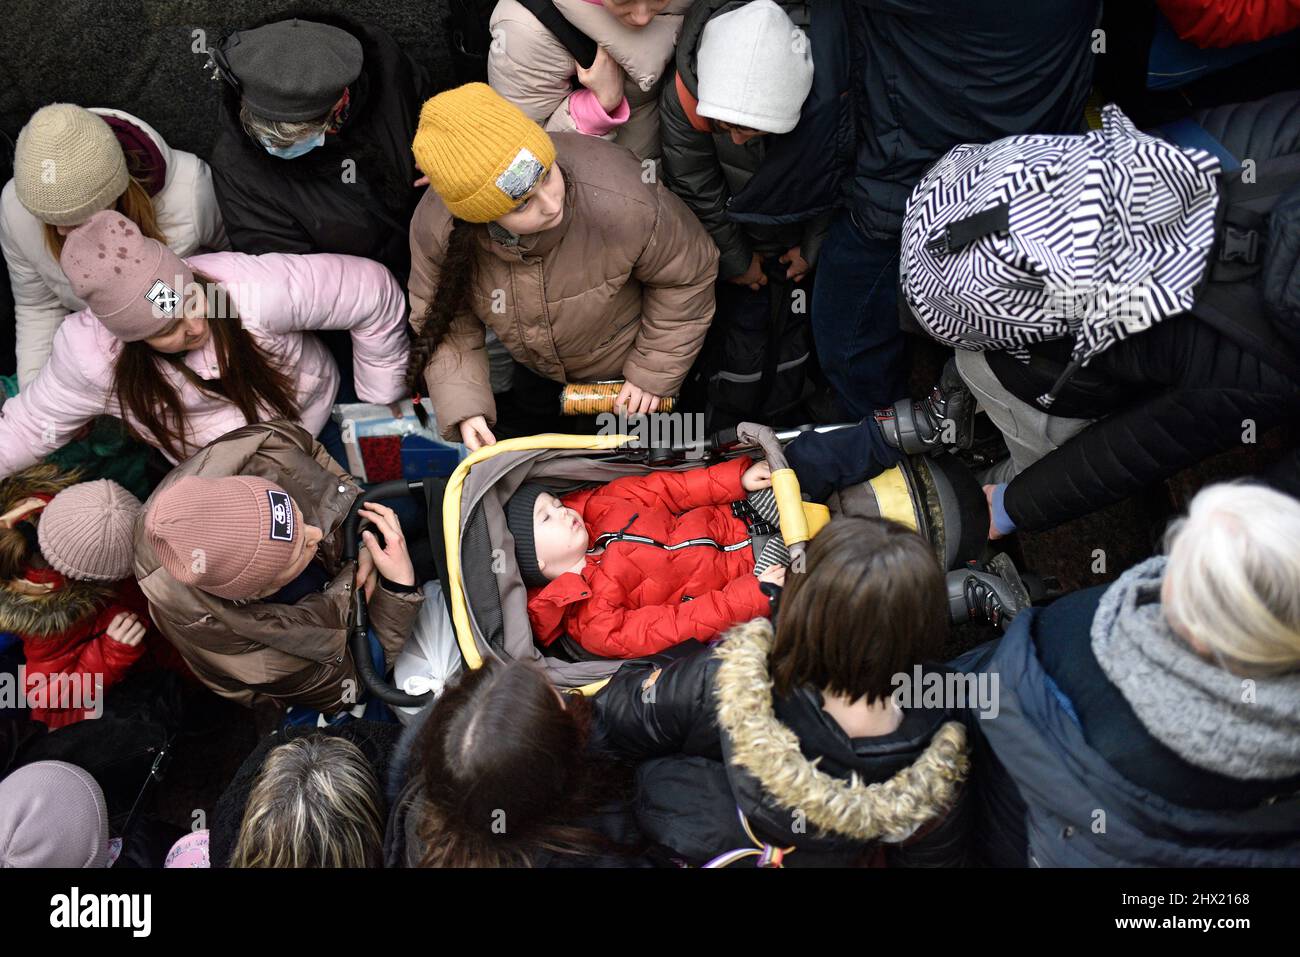 LVIV, UKRAINE - 28. FEBRUAR 2022 - Ein Baby schläft in einem Kinderwagen, der von Menschen am Bahnhof von Lviv umgeben ist, als Flüchtlinge vor den Feindseligkeiten an Bord von eva fliehen Stockfoto